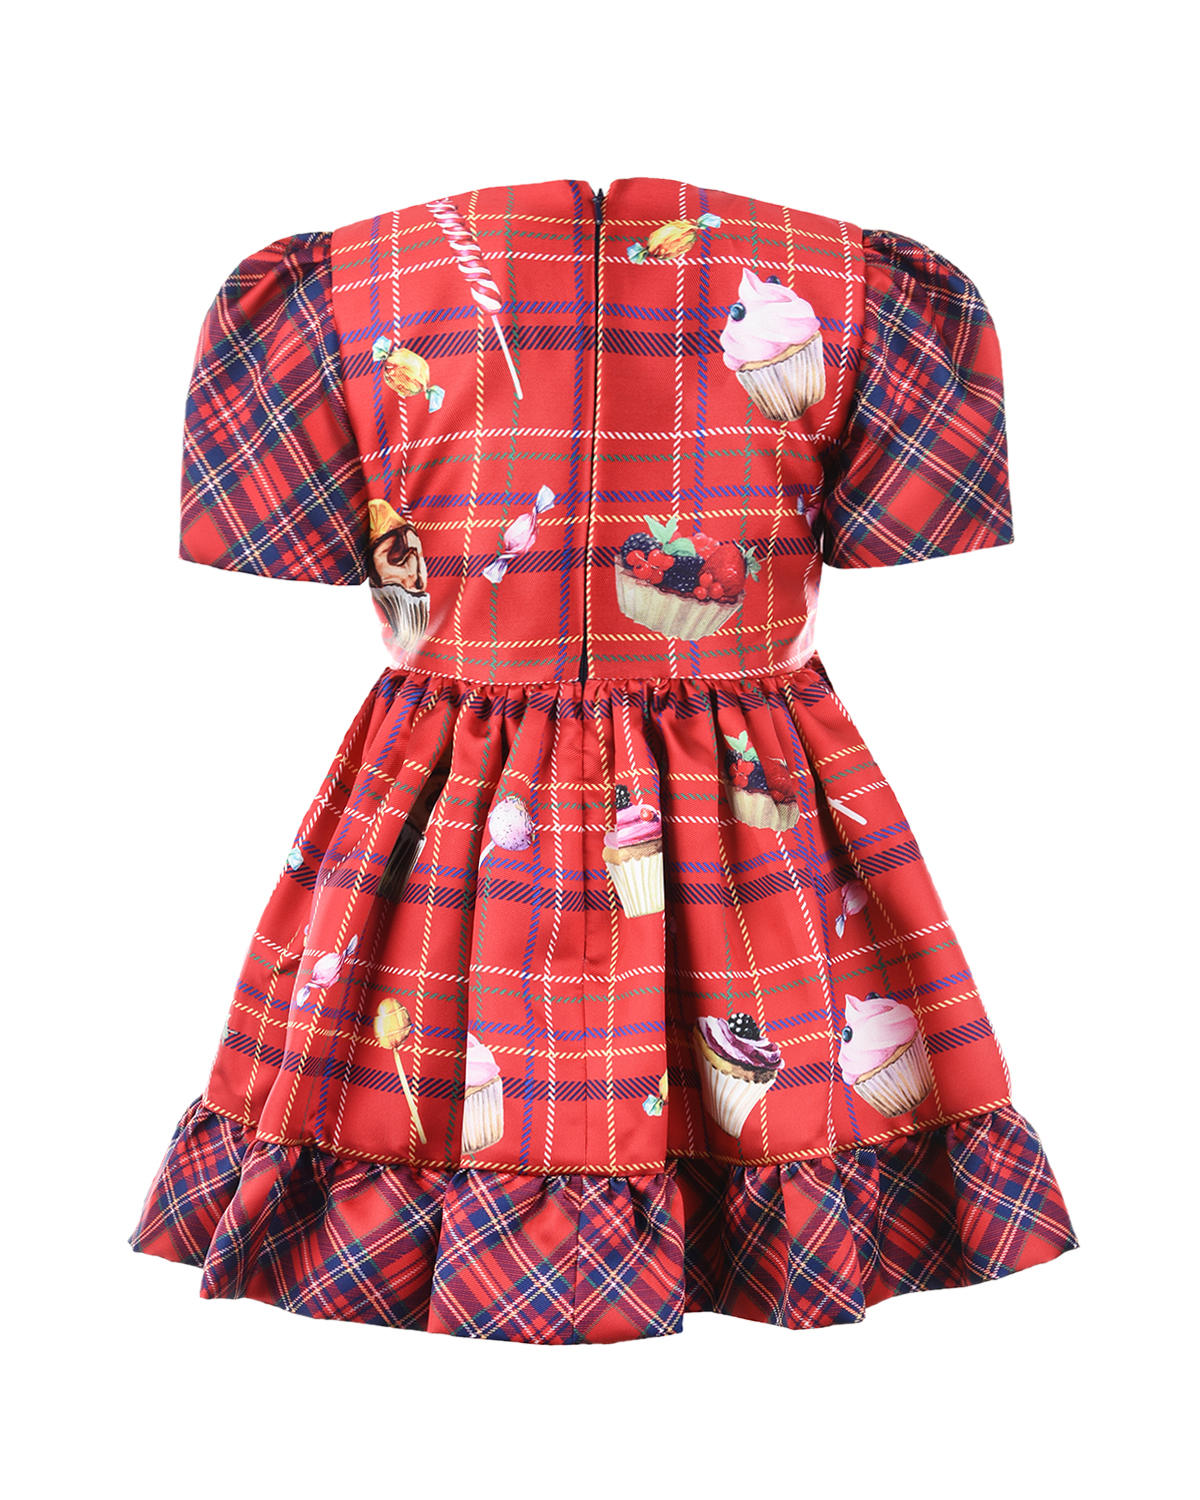 Клетчатое платье с отделкой рюшами Eirene детское, размер 86, цвет красный - фото 2